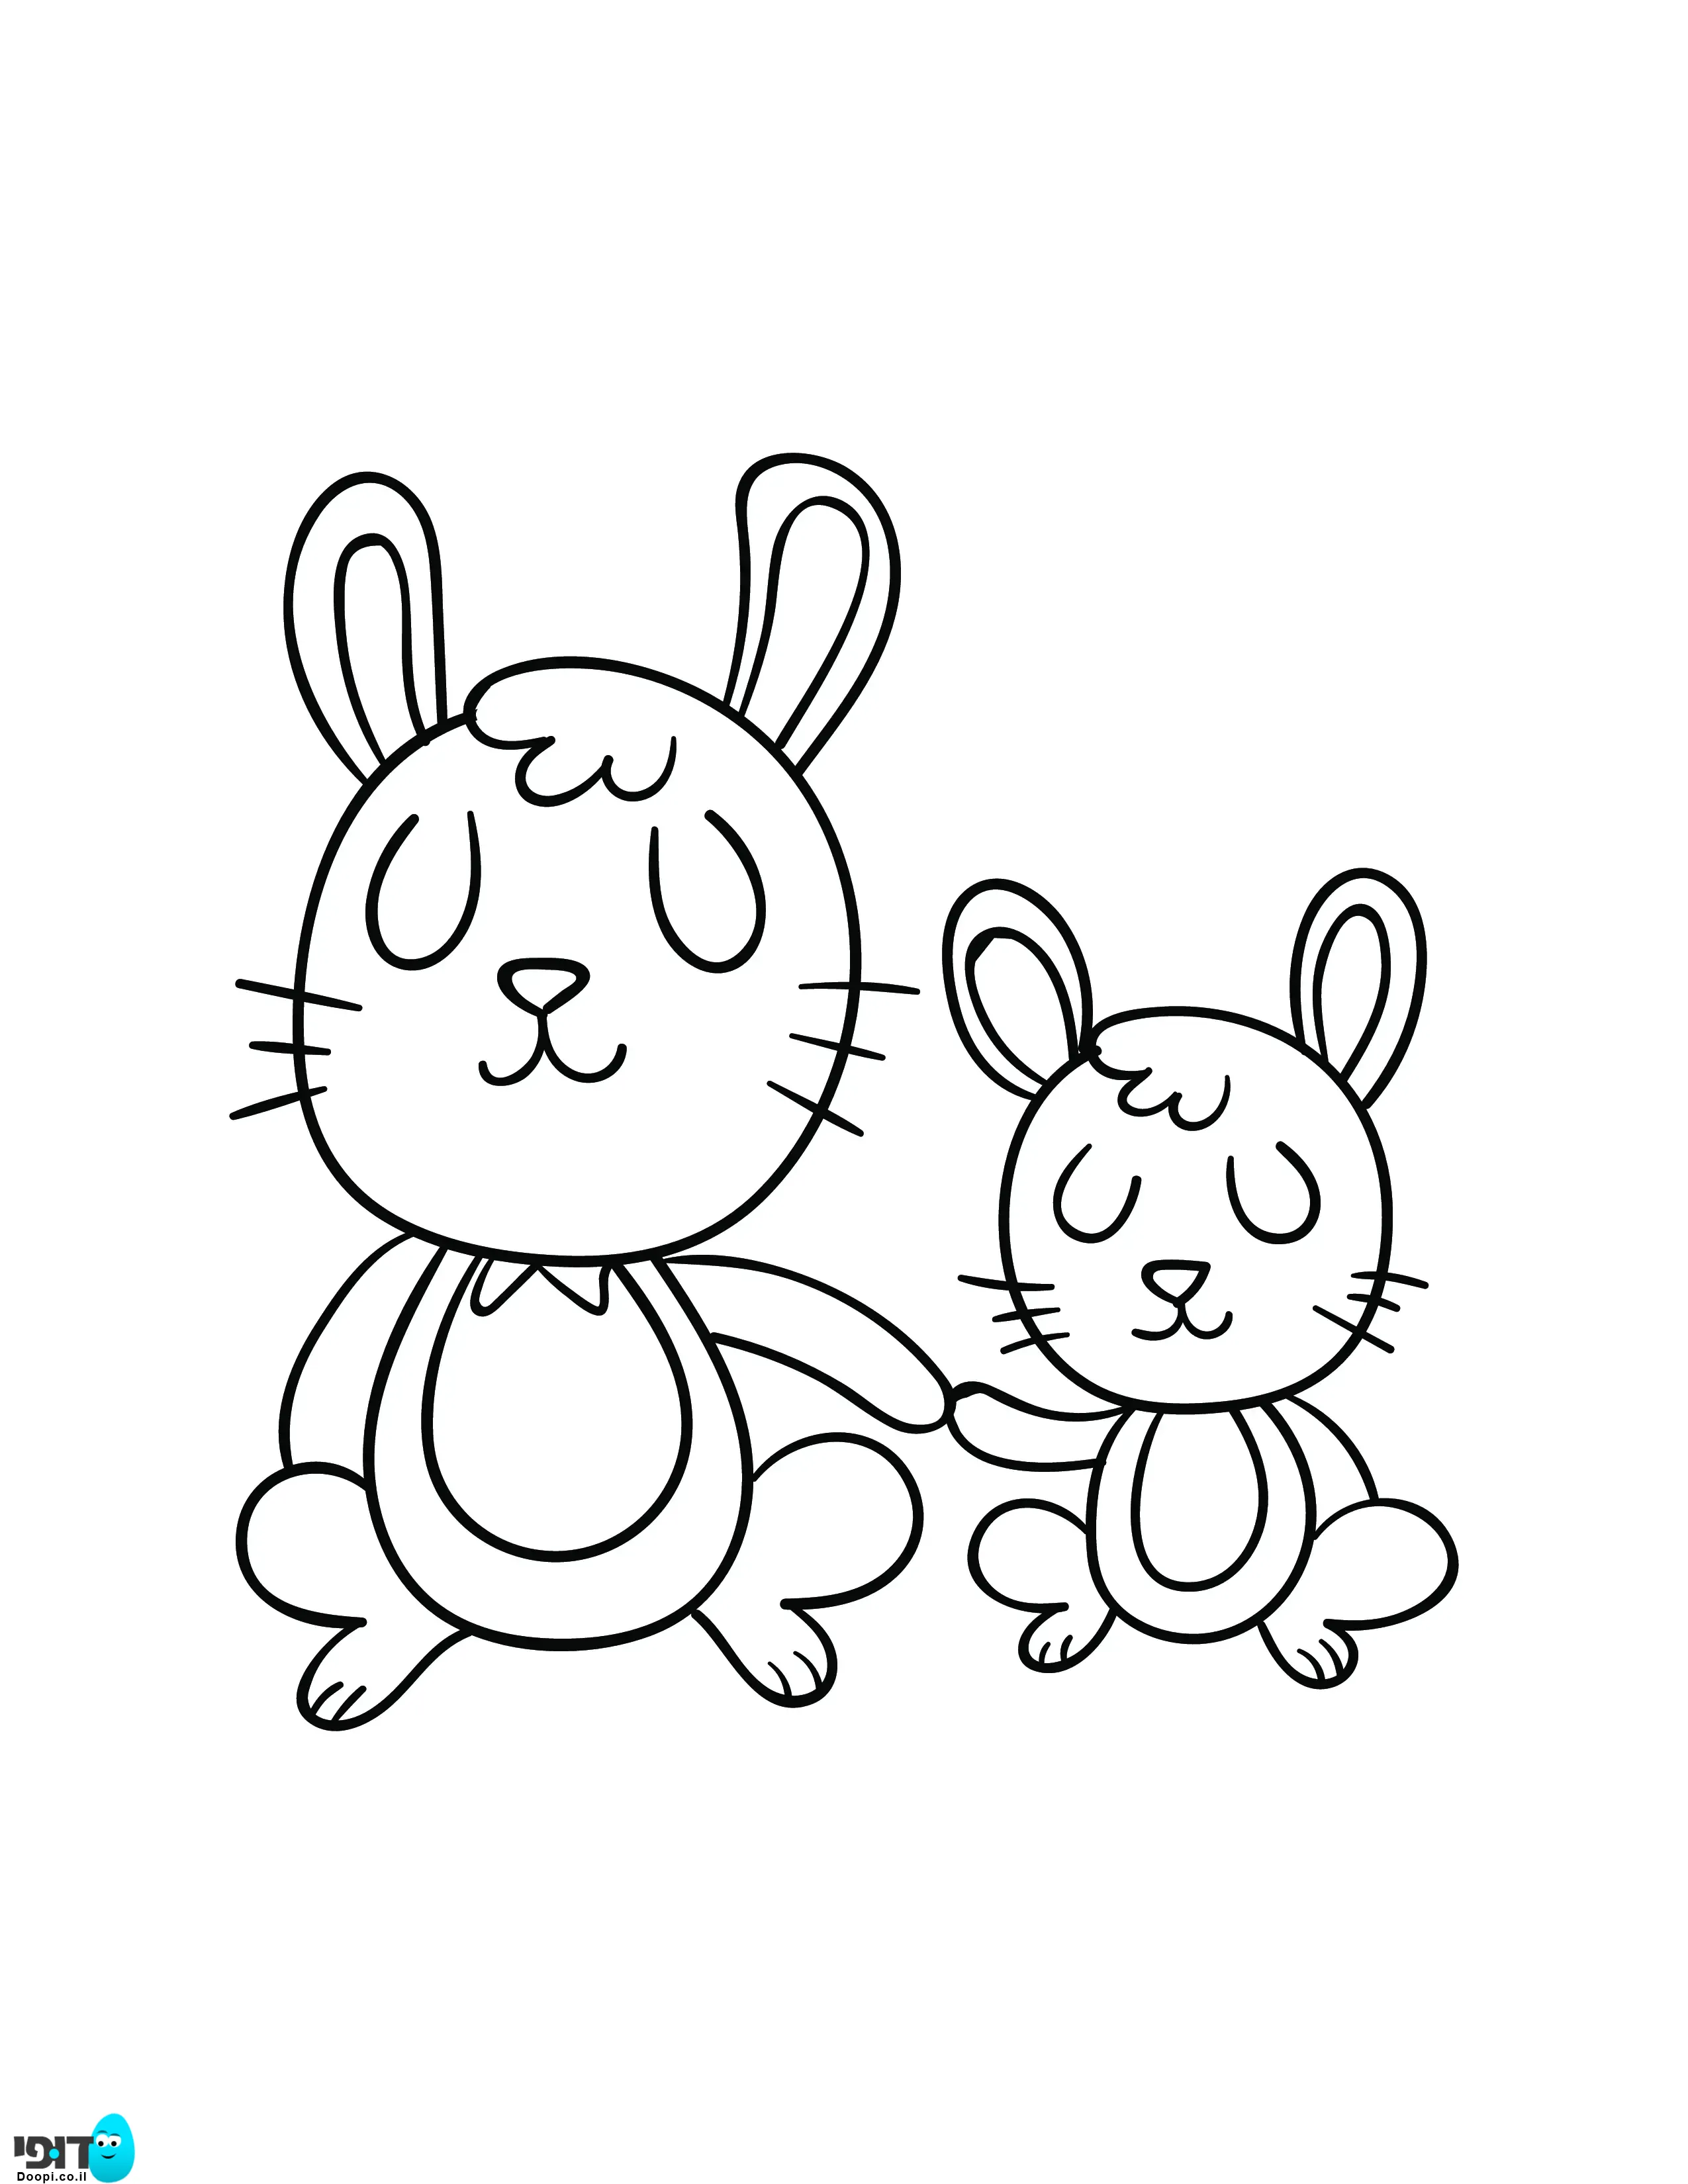 דף צביעה חיות חמודות ארנב וארנבון